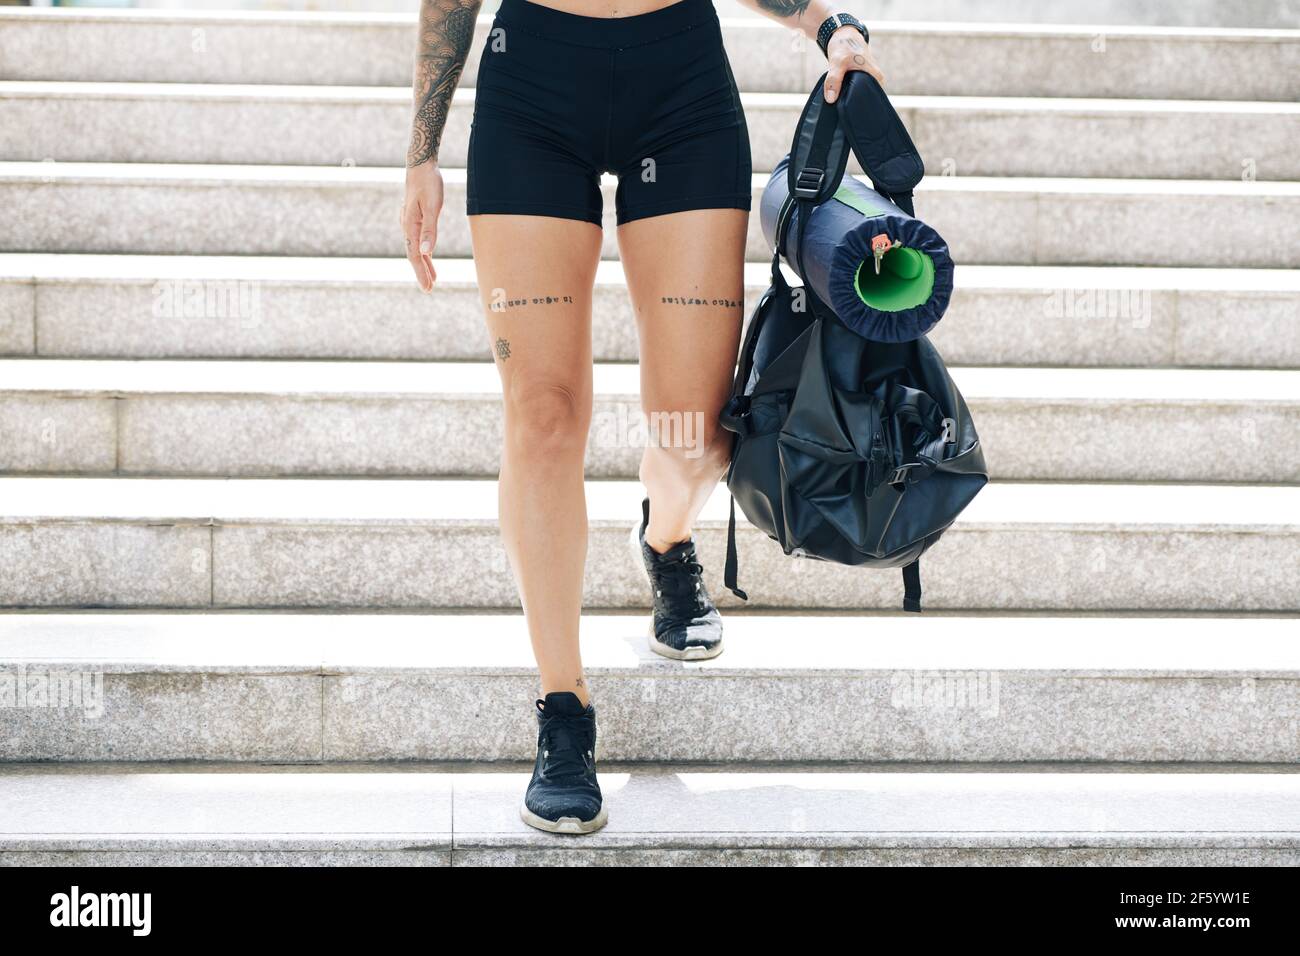 Beschnittenes Bild von fit junge Frau in Turnhalle Shorts zu Fuß Die Treppe runter mit Sporttasche in den Händen Stockfoto